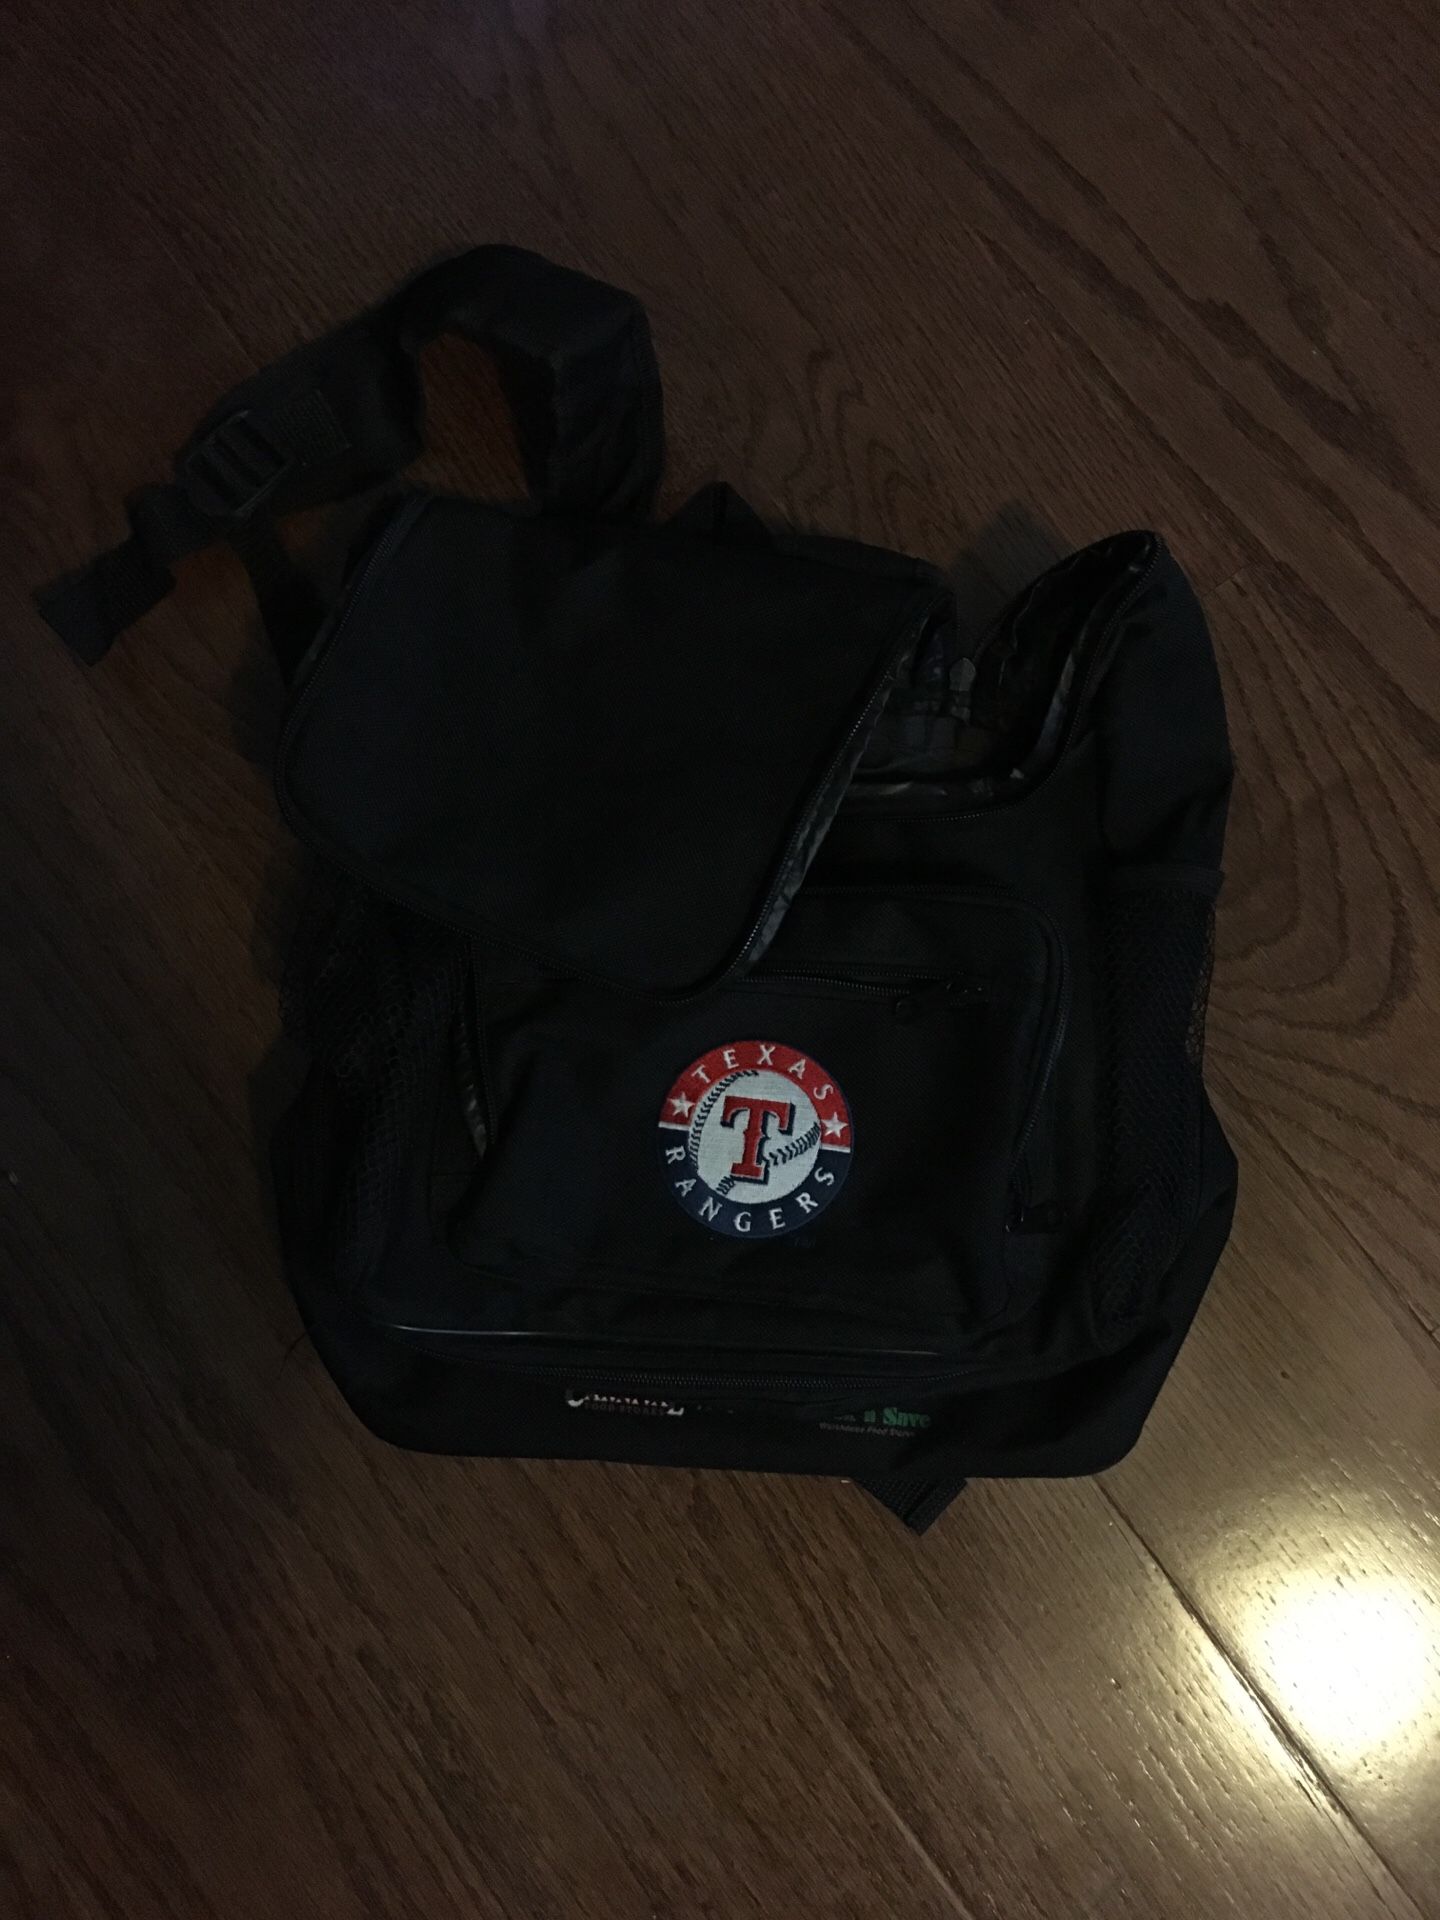 Texas Ranger mini-backpack